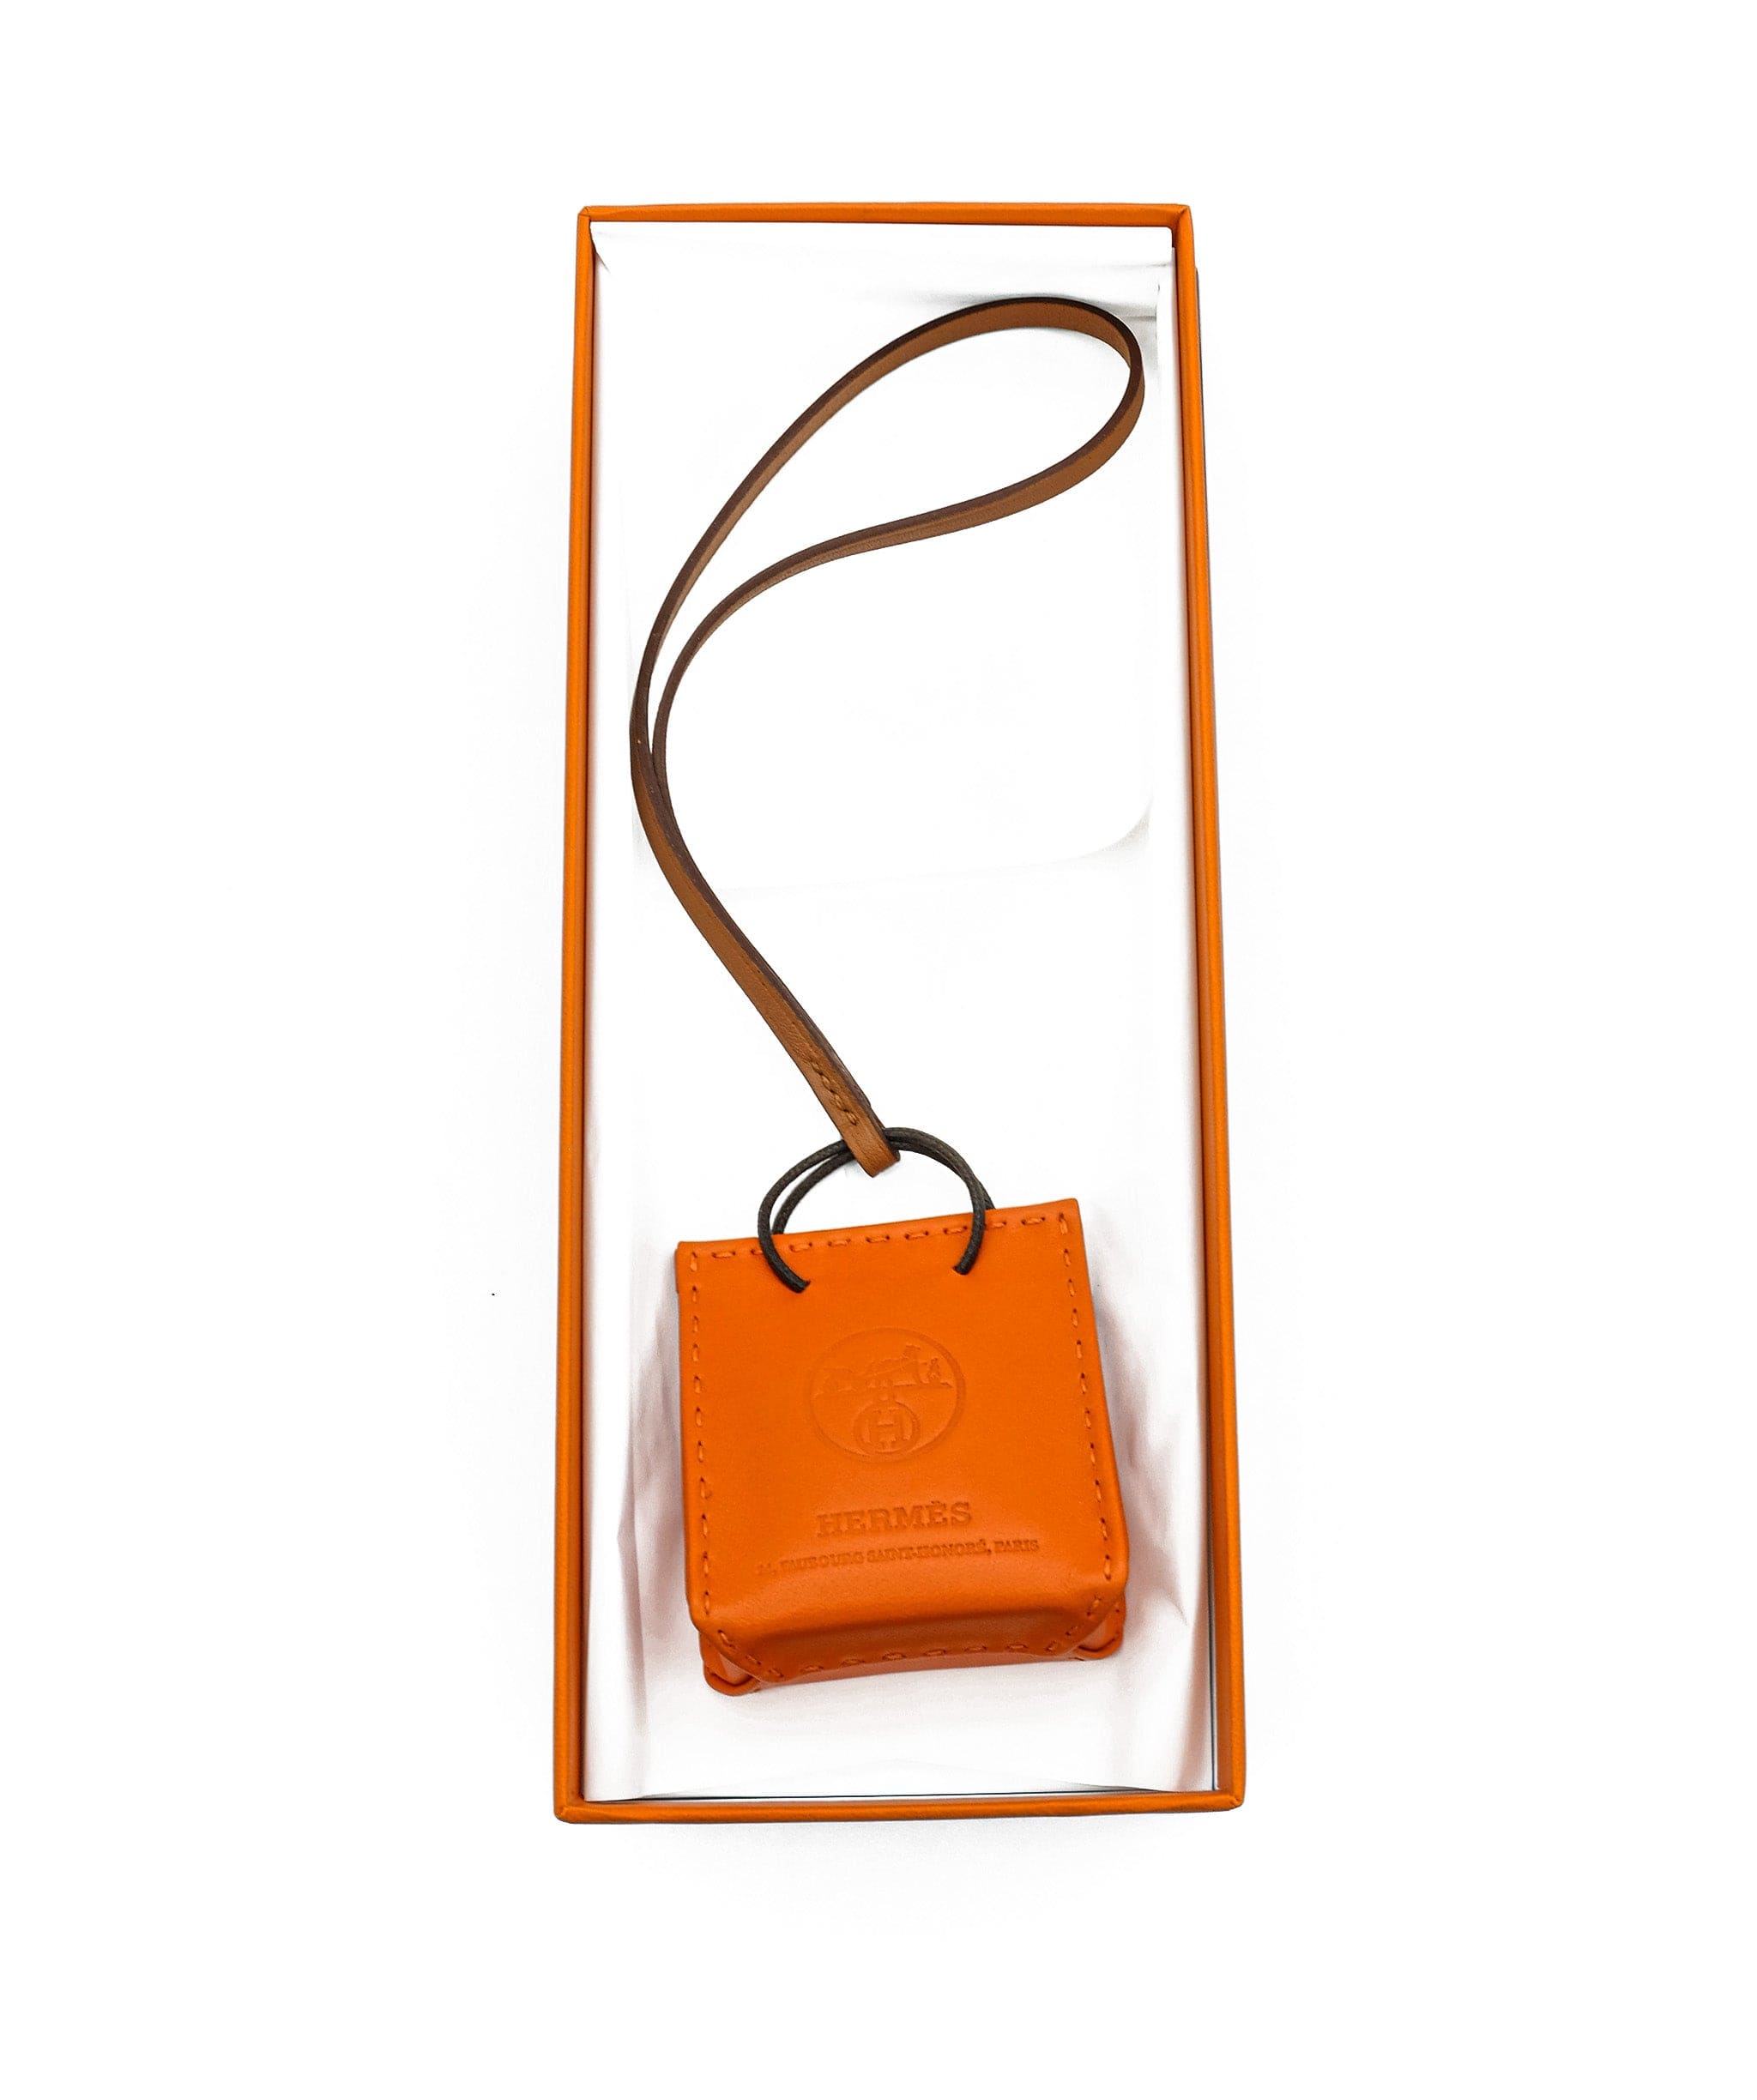 Hermès Hermes shopping bag charm AJL0033